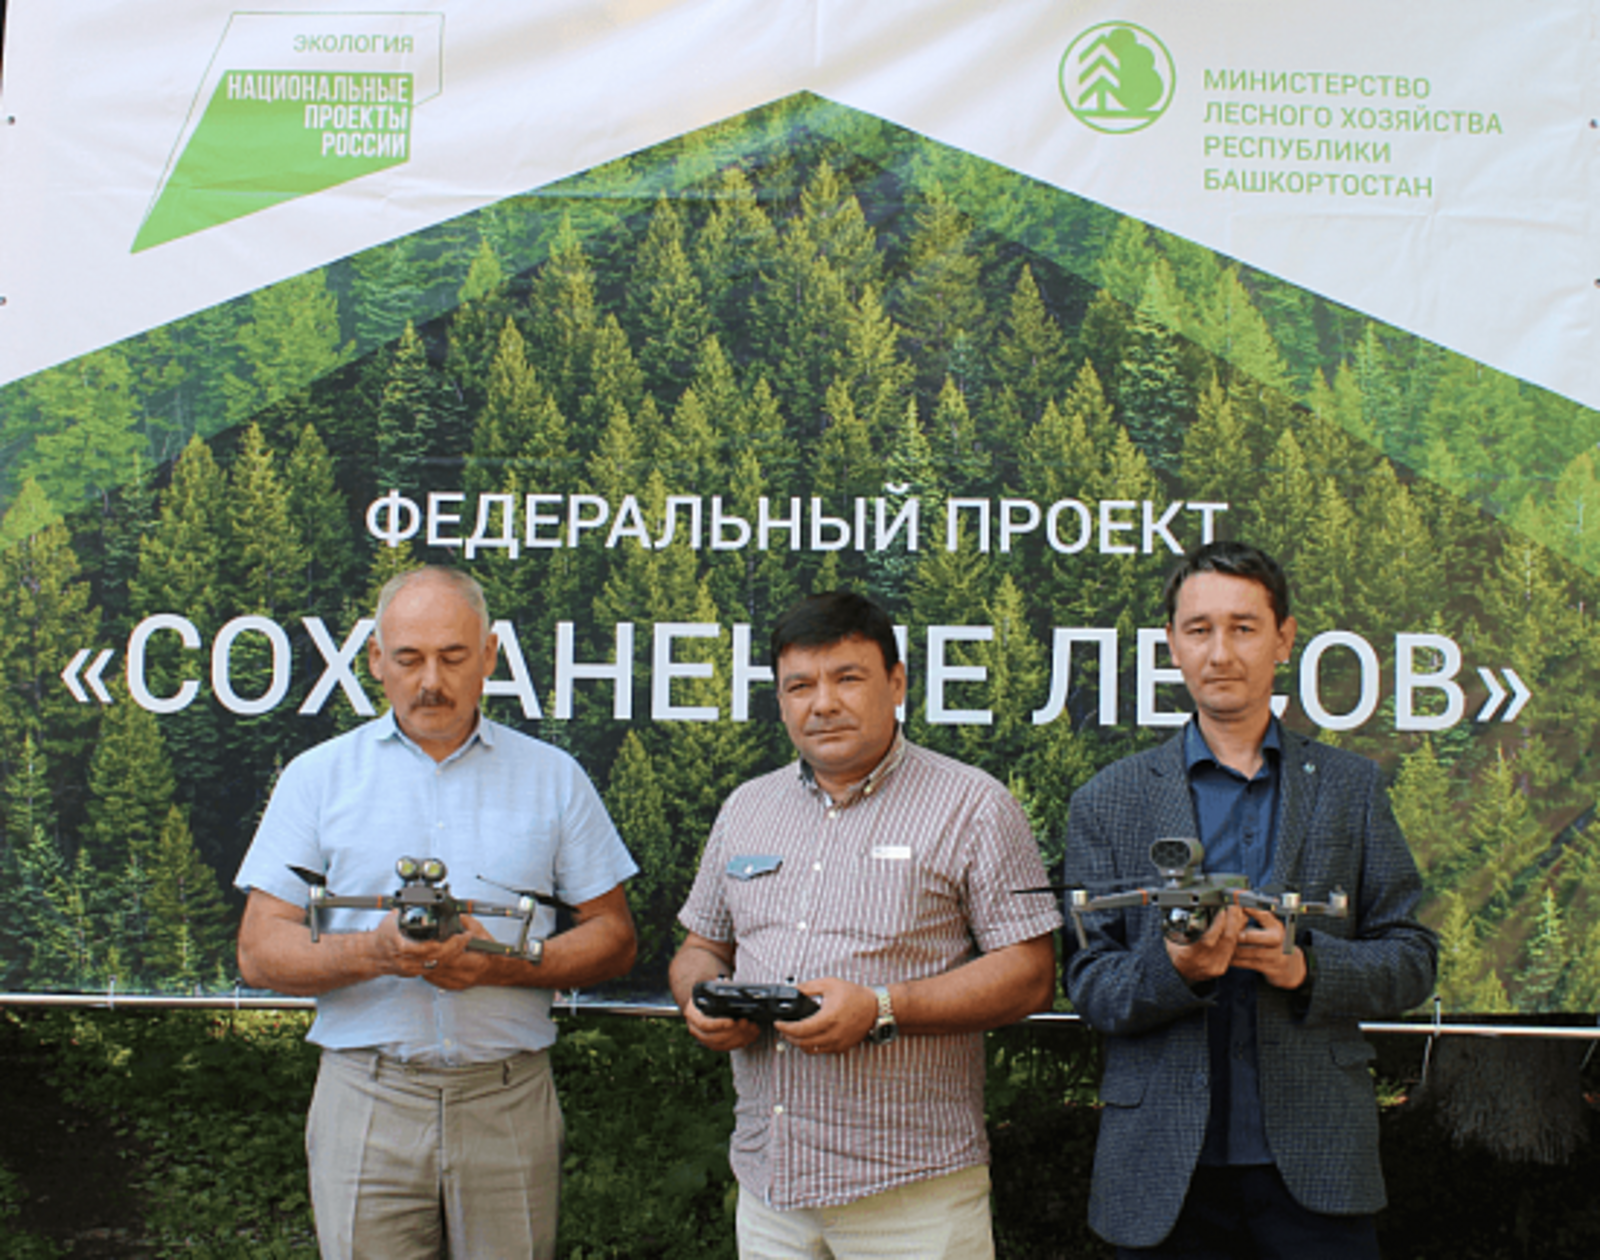 Фото пресс-службы Министерства лесного хозяйства РБ.